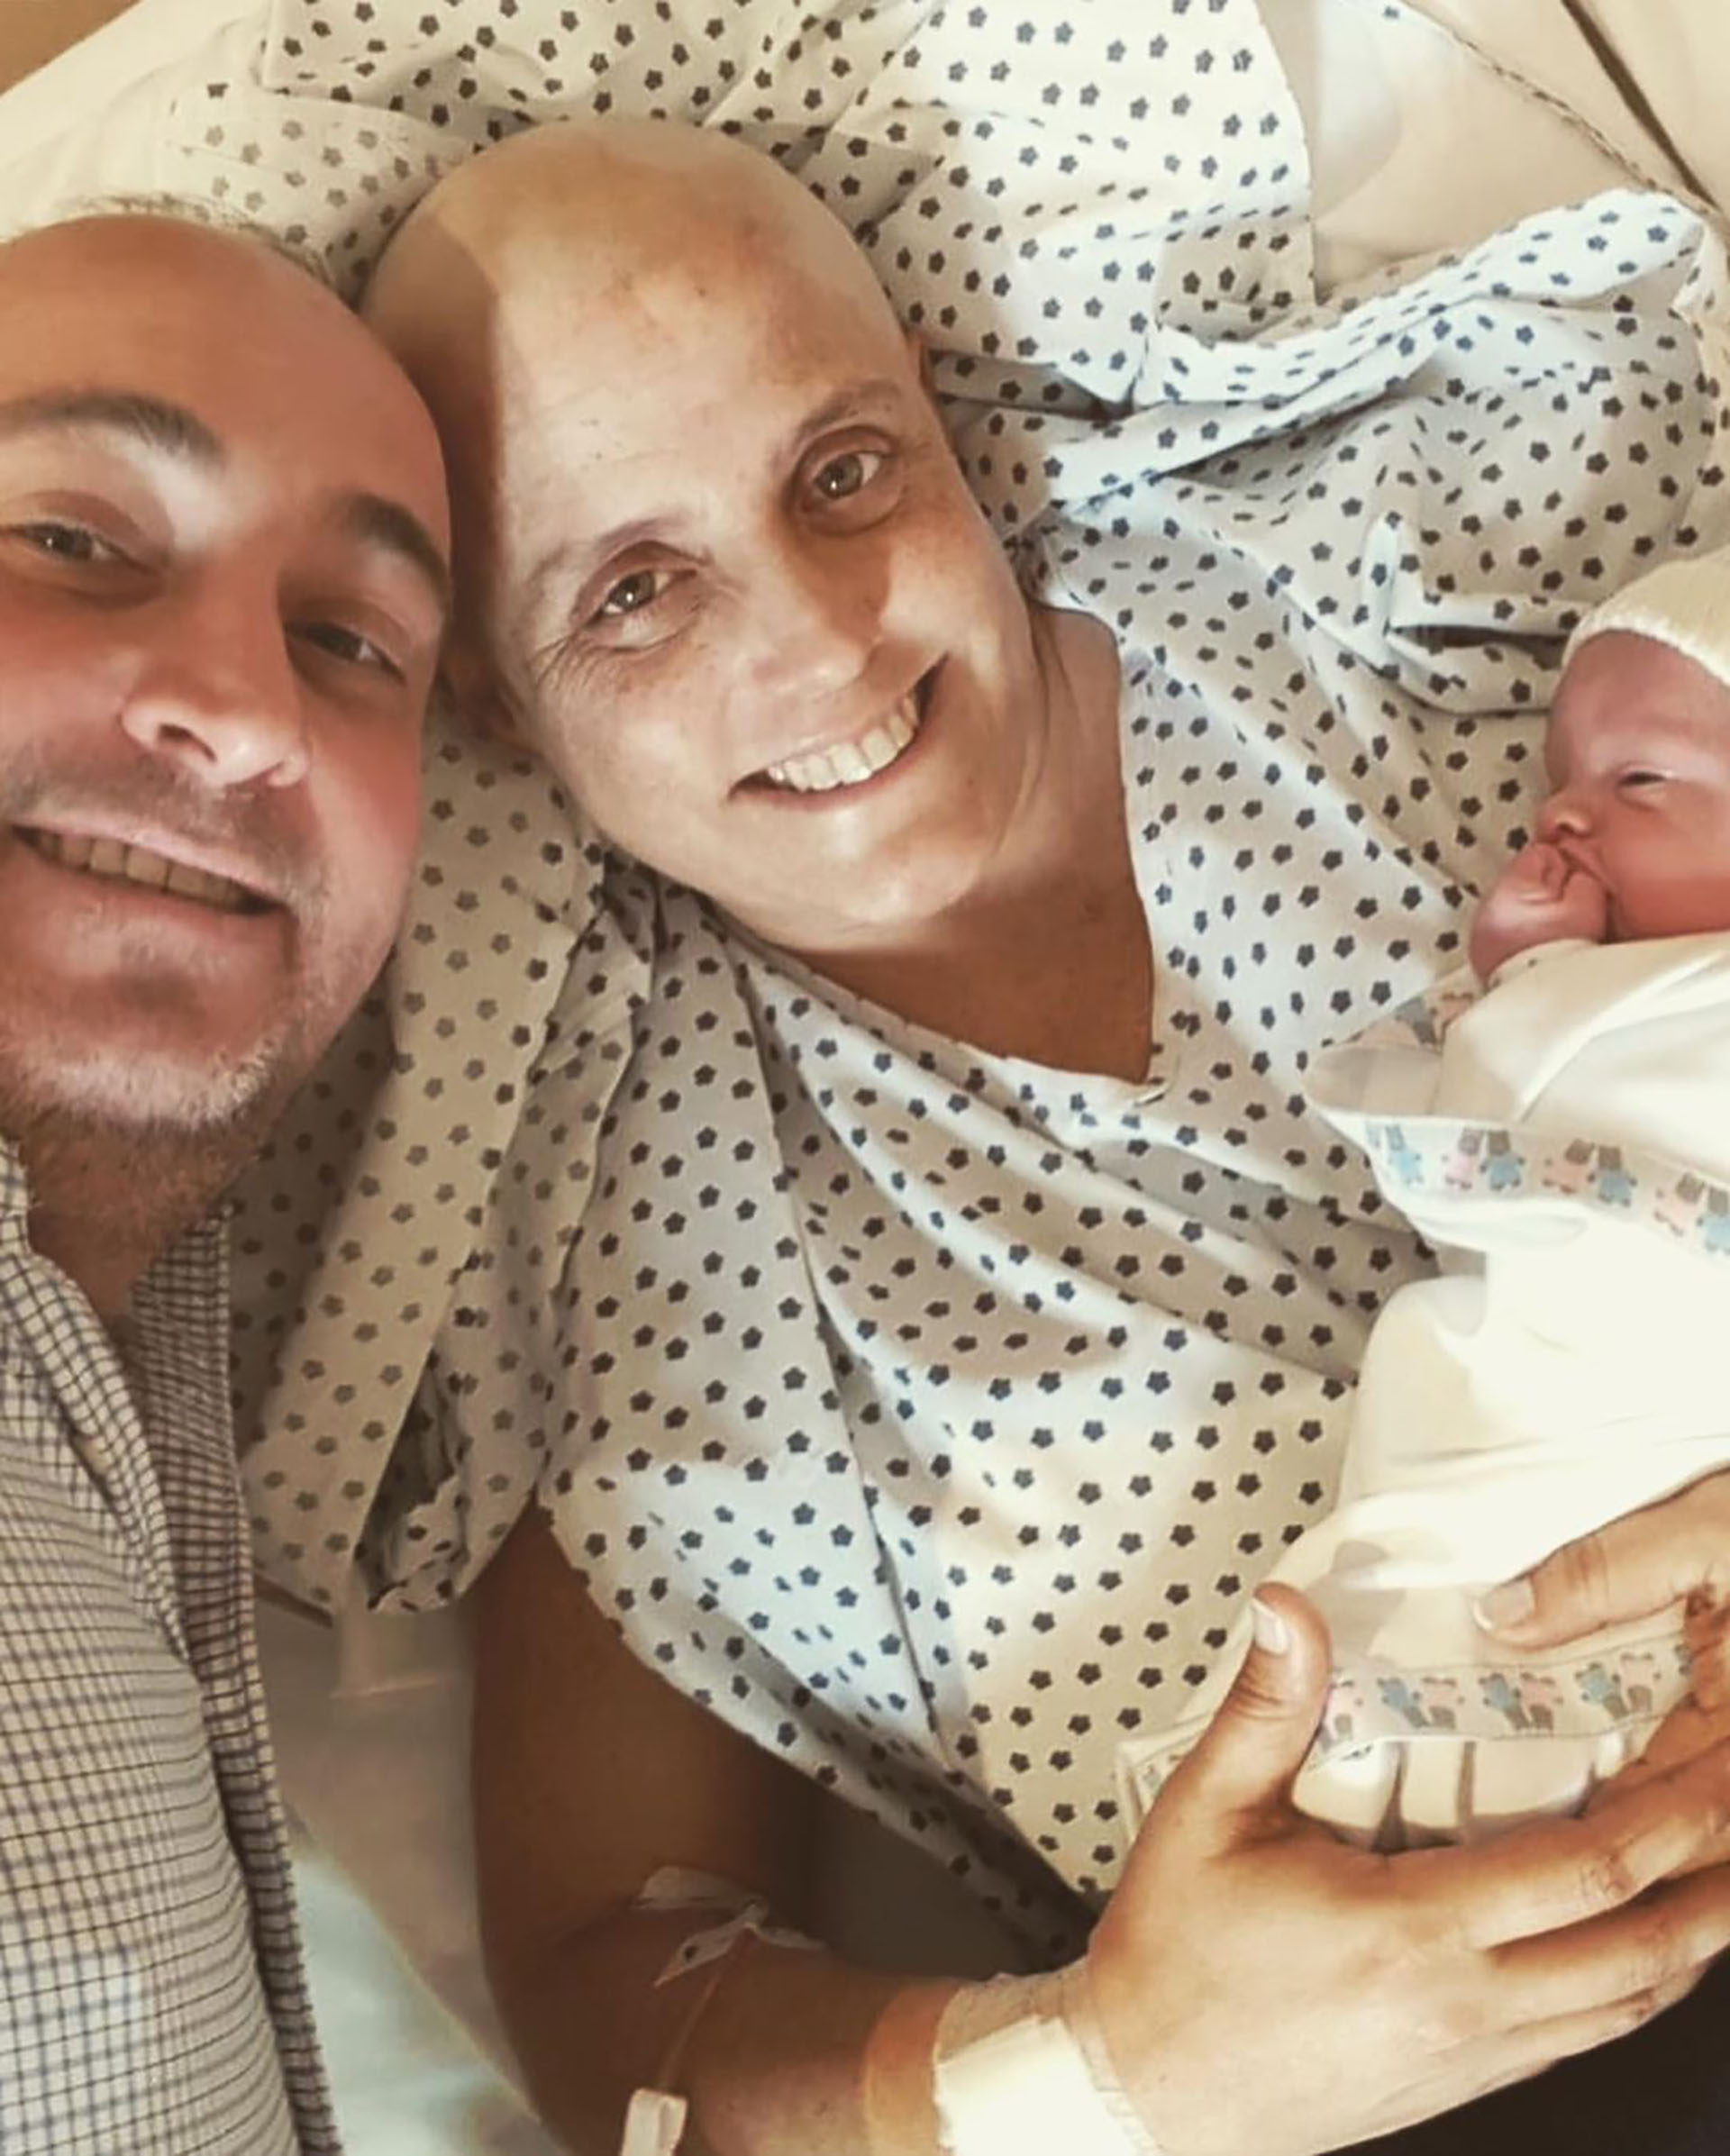 El 12 de octubre de 2018, luego de cuatro sesiones de quimioterapia, nació Fermín por cesárea. "Pesó 2 kilos 800 gramos. Pese a todo el contexto, fue el día más feliz de nuestras vidas", dice Agustina (Foto/@renatito_y_yo)